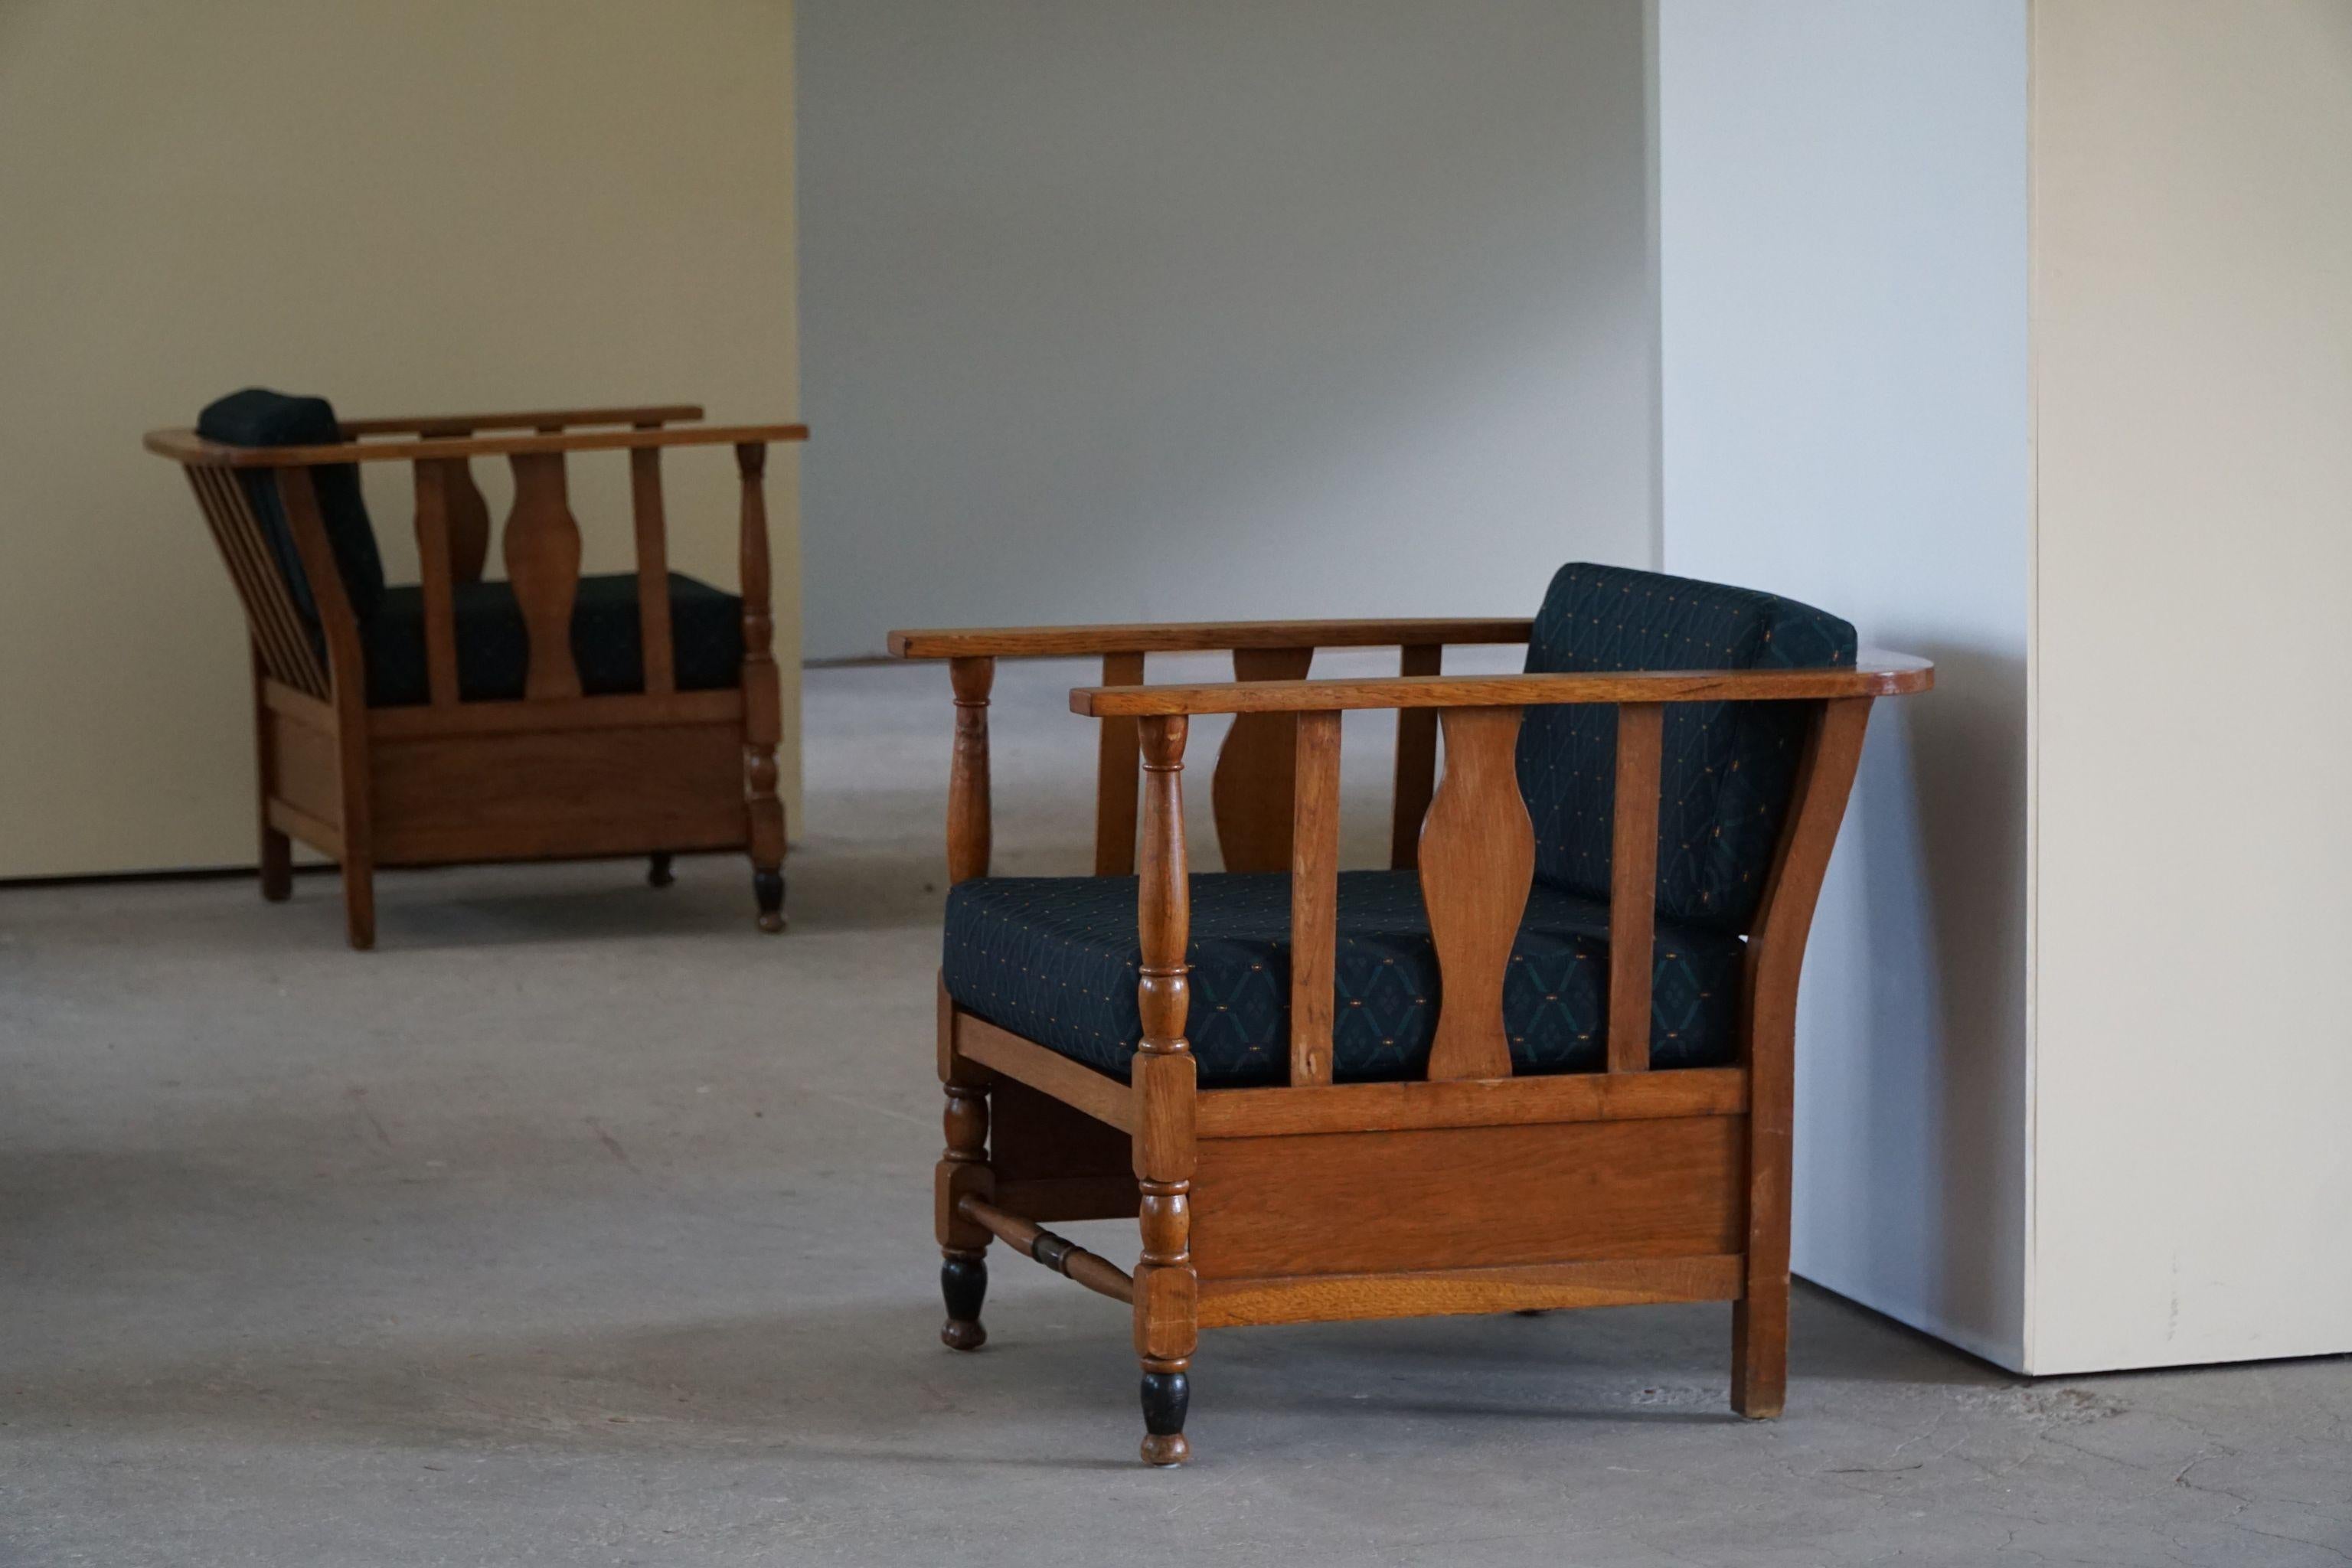 Seltenes Paar skulpturaler Loungesessel / Sessel aus massiver Eiche, neu gepolstert mit Stoff im königlichen Stil. Hergestellt von einem dänischen Möbelschreiner in den frühen 1900er Jahren.
Diese schönen Vintage-Stühle passen zu vielen modernen